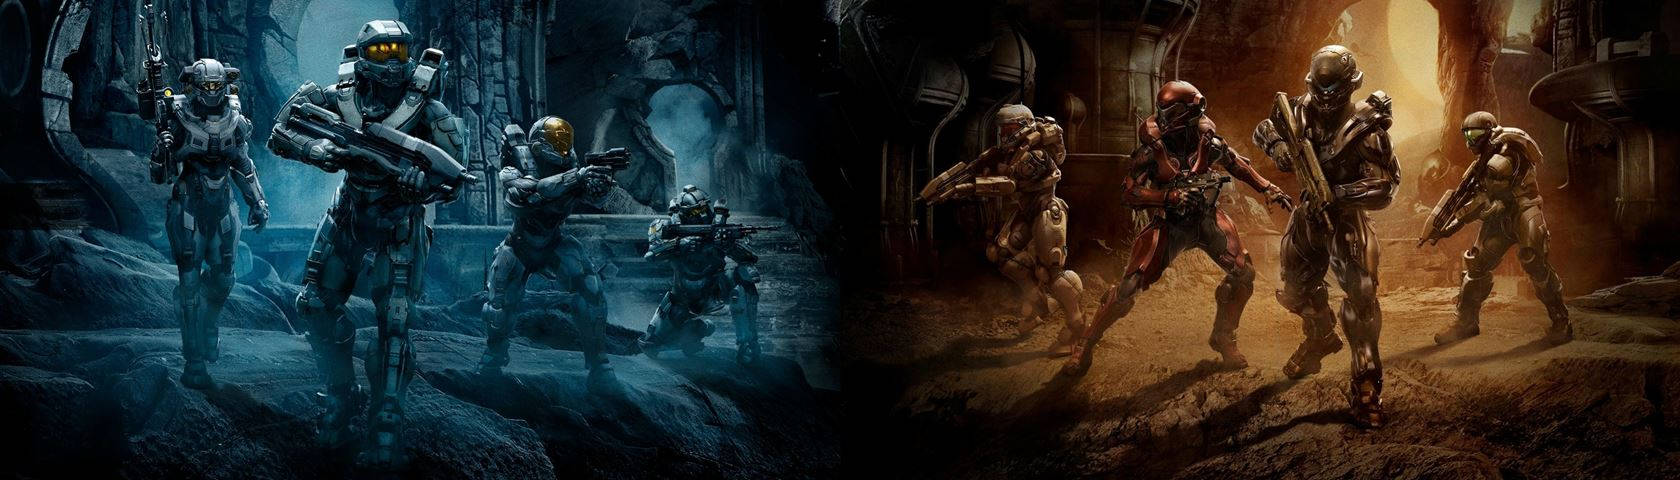 Wallpaperpapel De Parede Halo 5 Guardians Para Dois Monitores. Papel de Parede